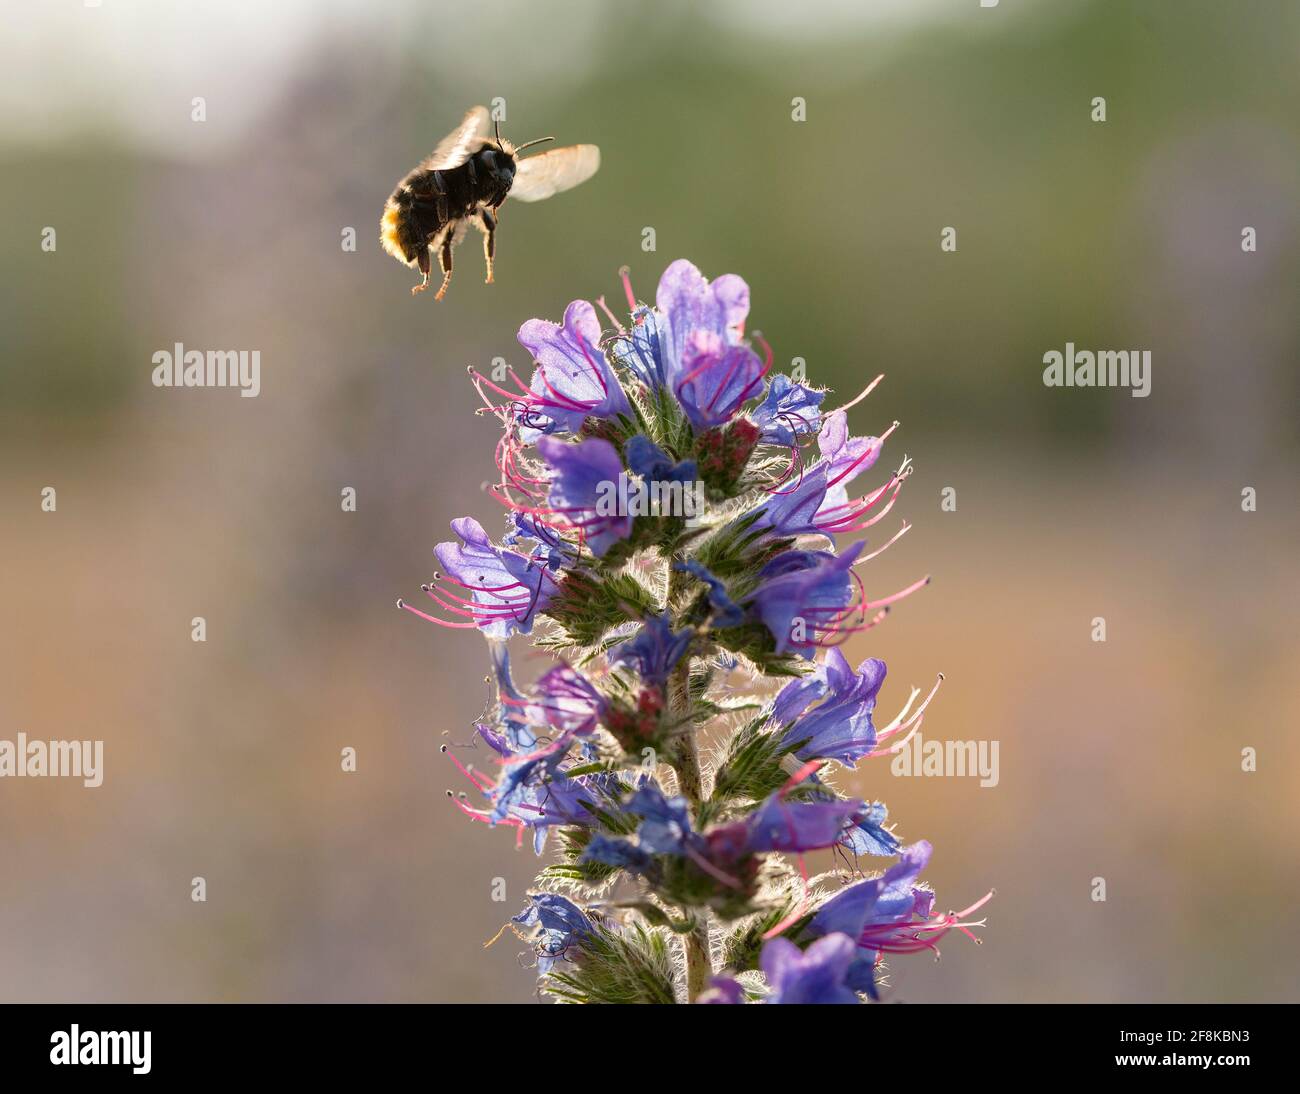 Common Carder Bee (Bombus pascuorum) in flight over Viper's Bugloss (Echium vulgare) Stock Photo